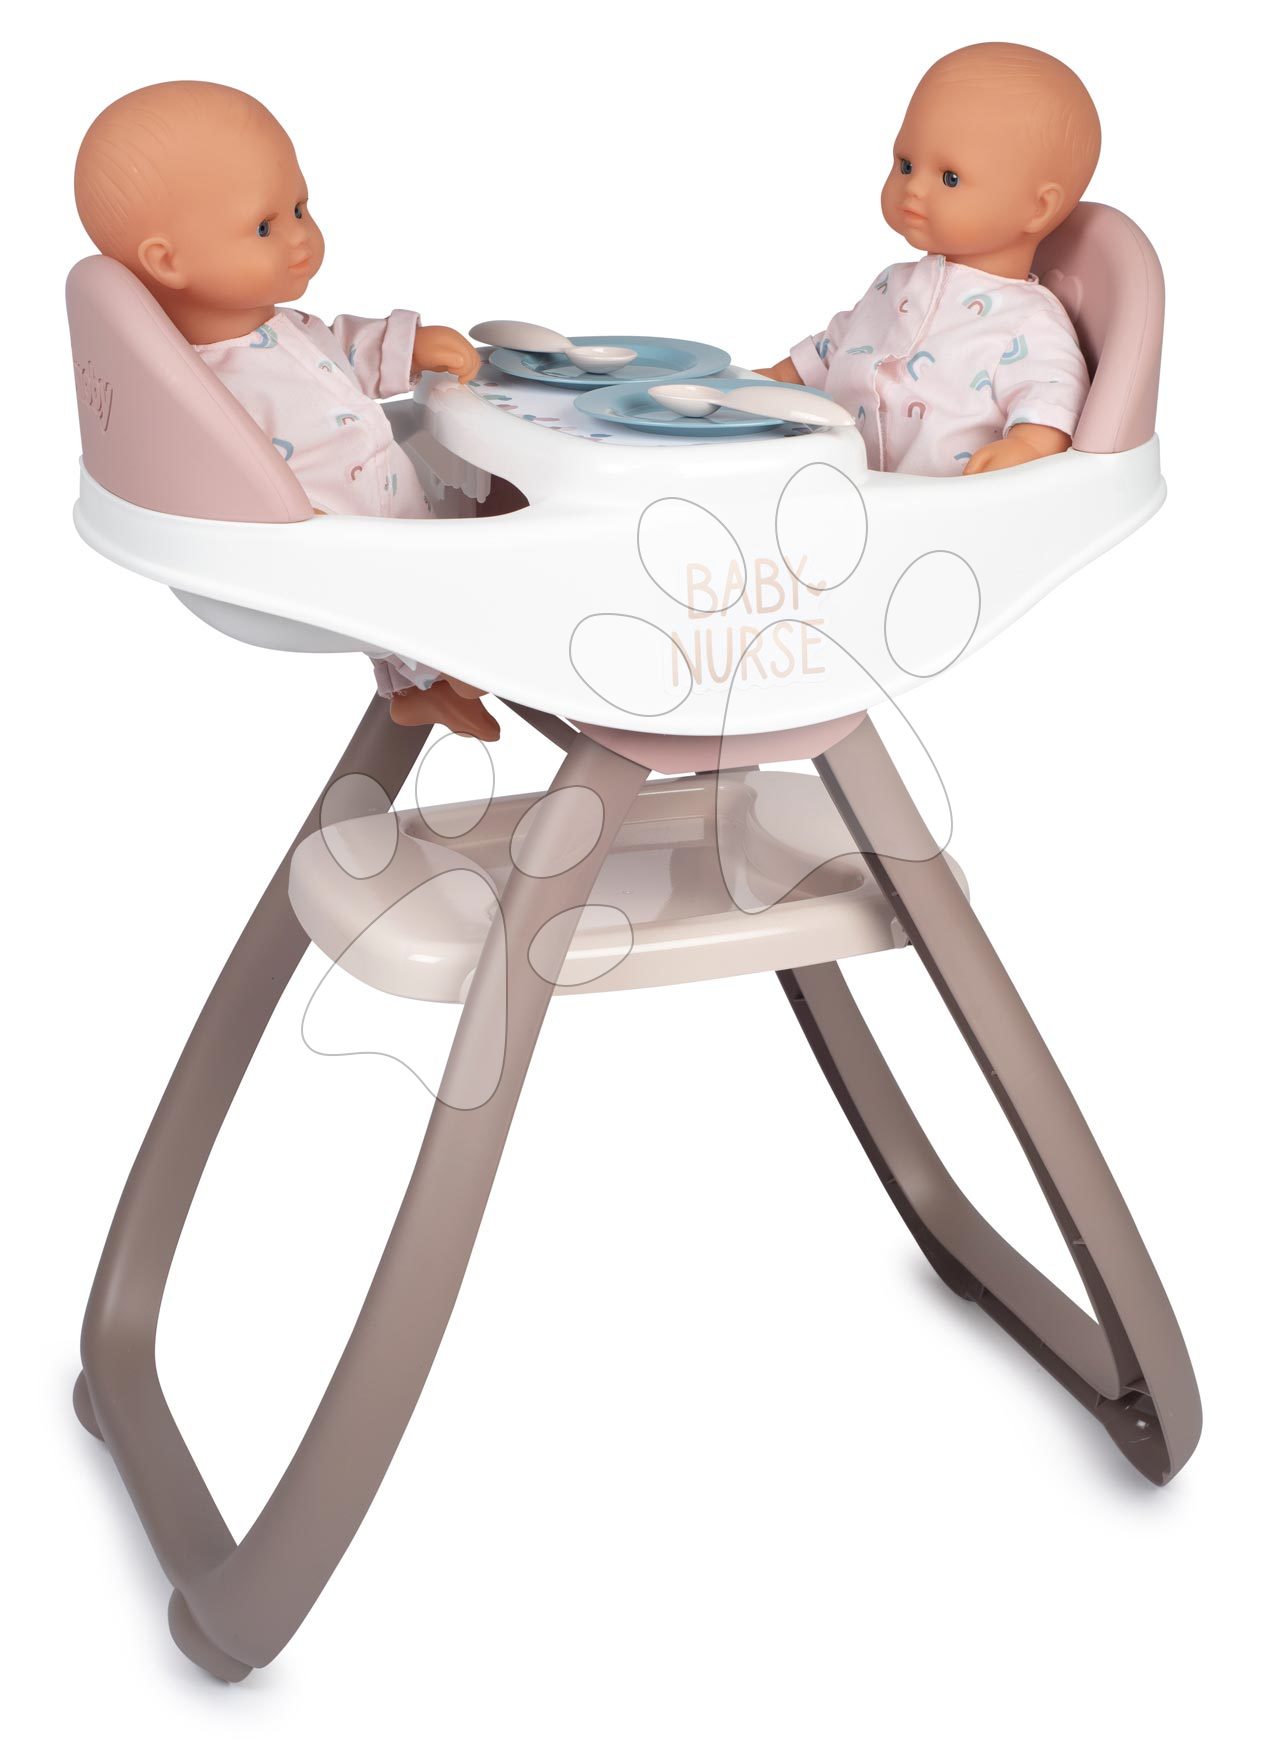 Játékbaba etetőszékek - Etetőszék ikreknek Twin Highchair 2in1 Natur D'Amour Baby Nurse Smoby 42 cm játékbabának 4 kiegészítővel 24 hó-tól